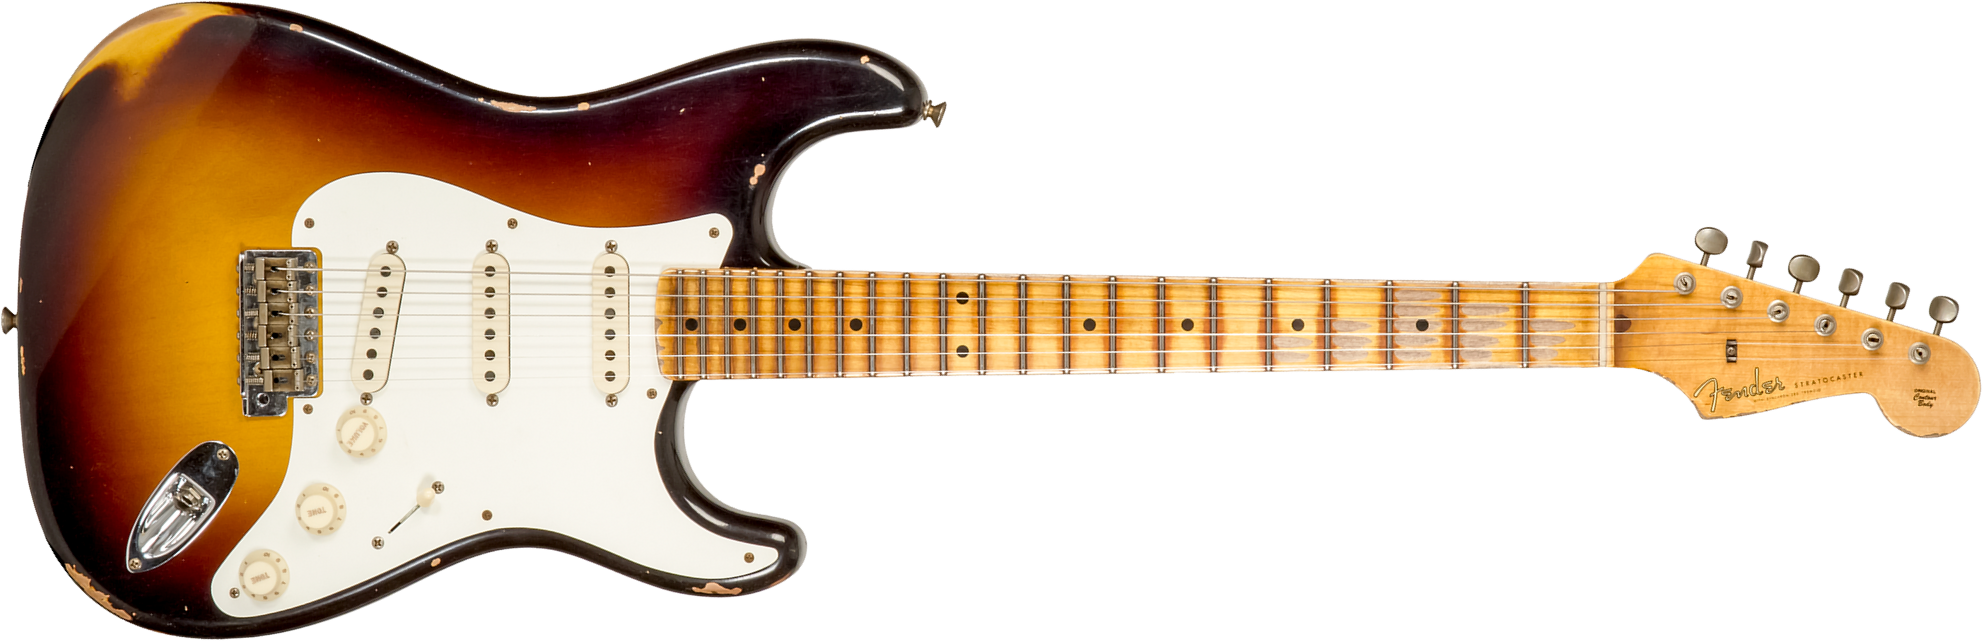 Fender Custom Shop Strat 1957 3s Trem Mn #cz575421 - Relic 2-color Sunburst - Str shape electric guitar - Main picture